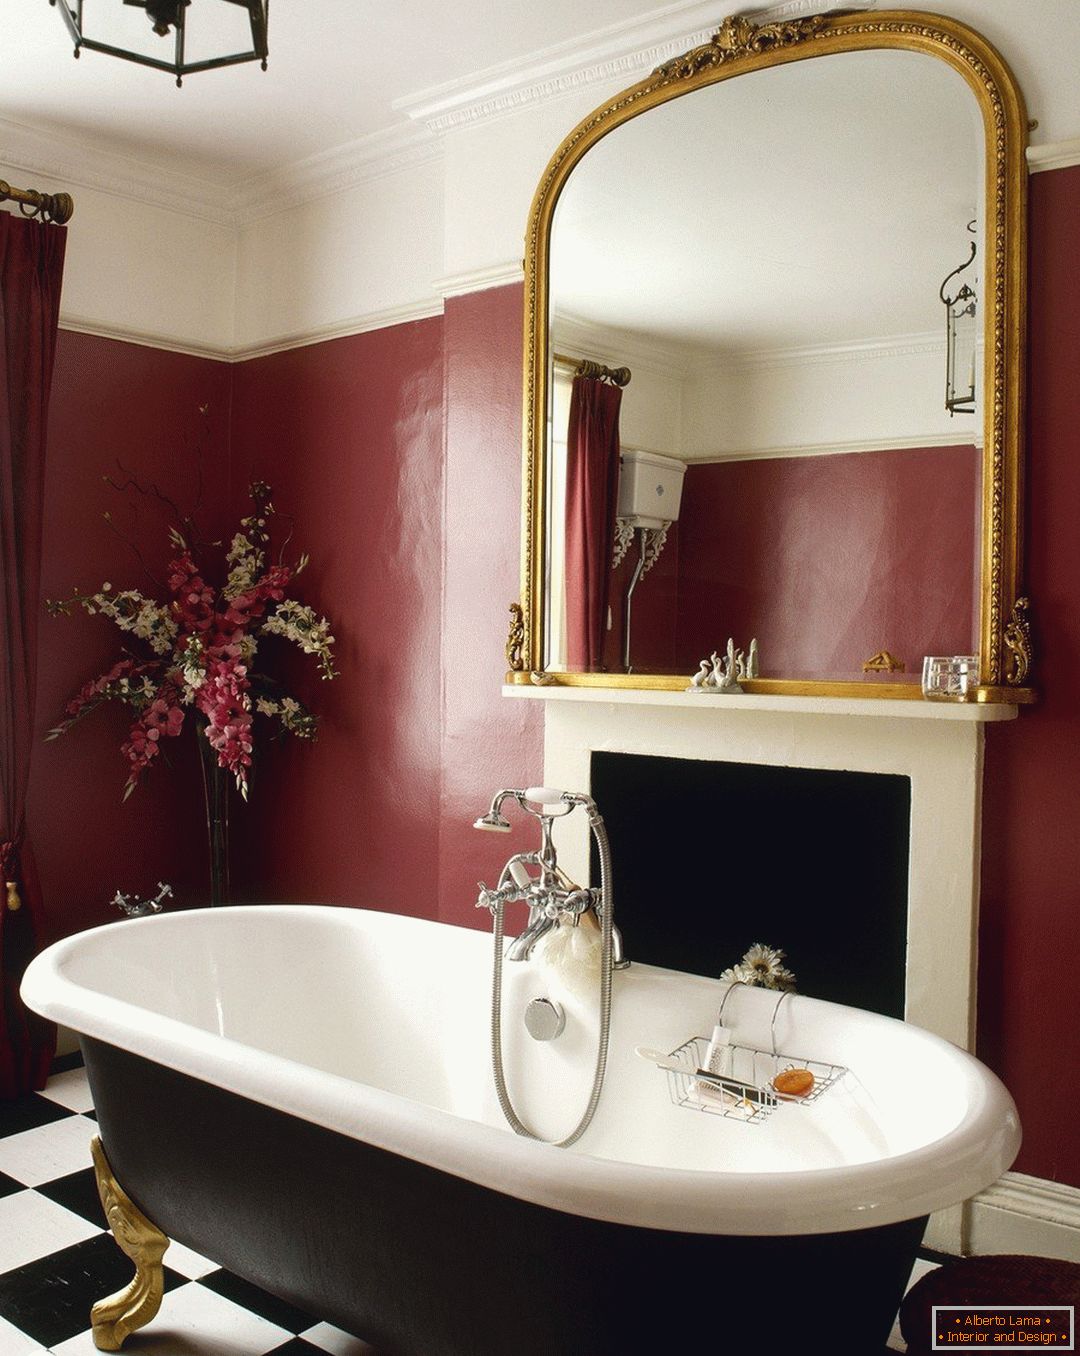 Fali vörösbor szín a fürdőszobában